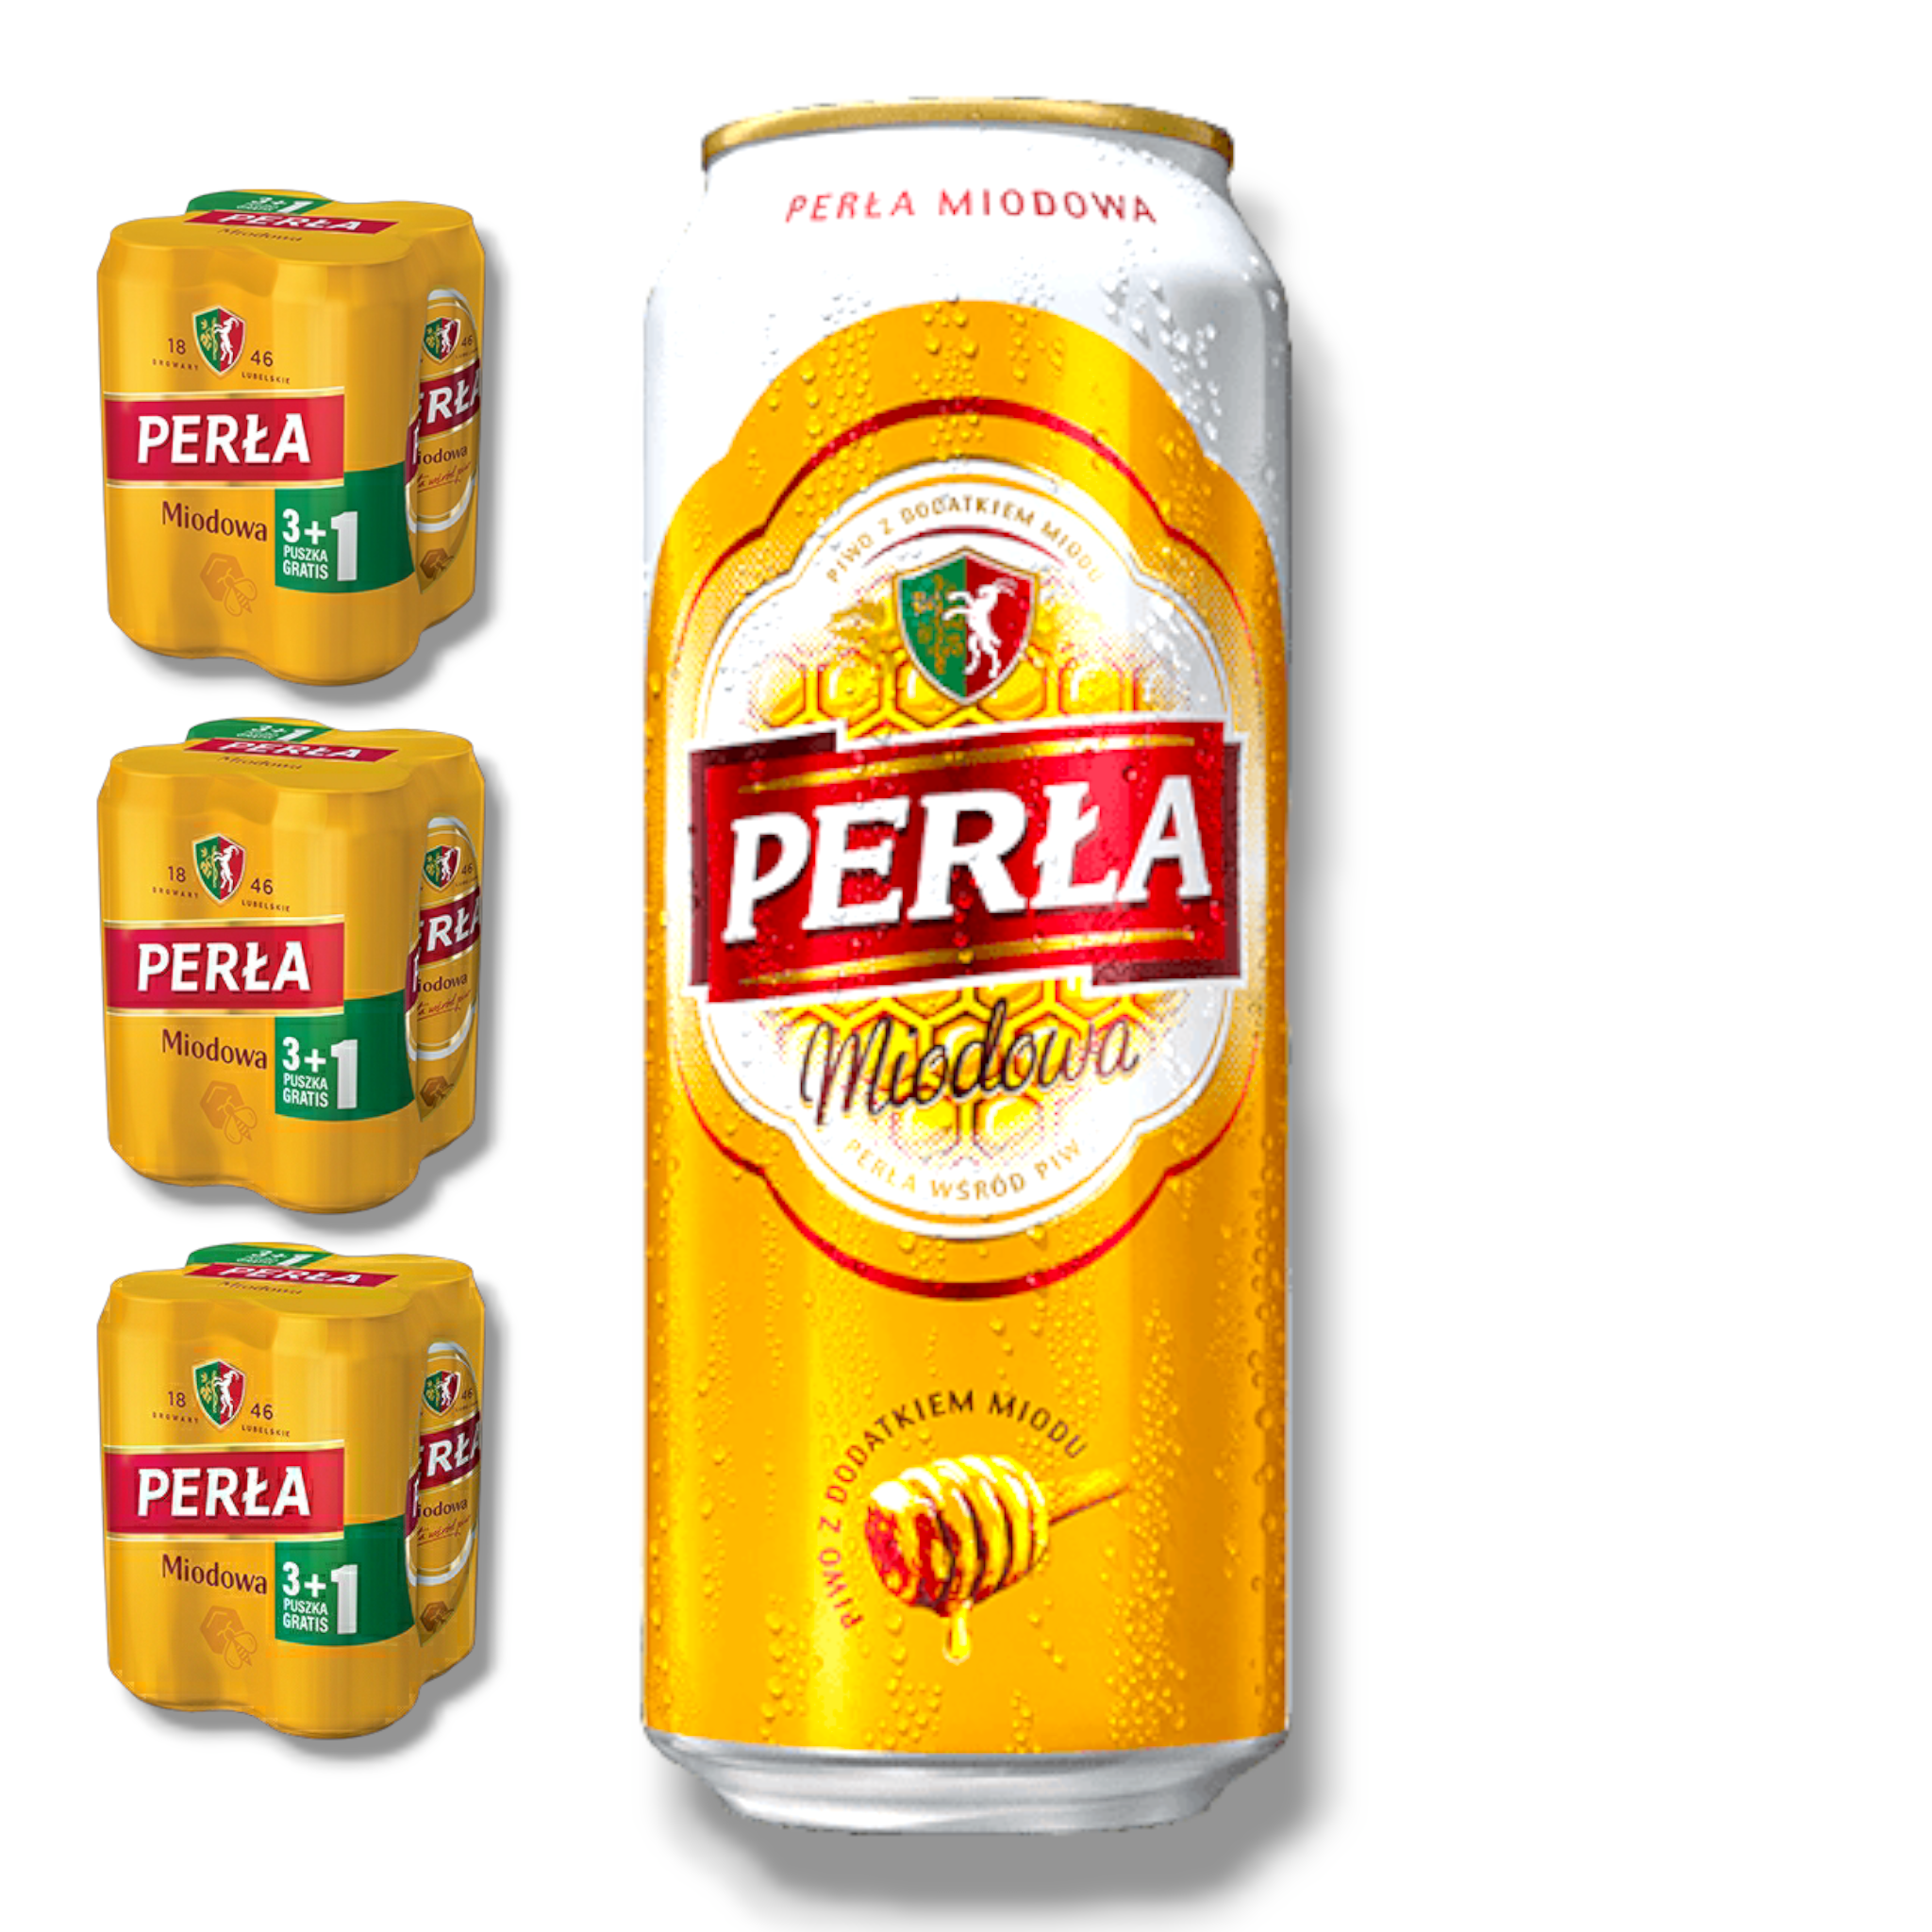 Perla Miodowa Bier 0,5l- Honigbier aus Polen in der Dose mit 6% Vol.